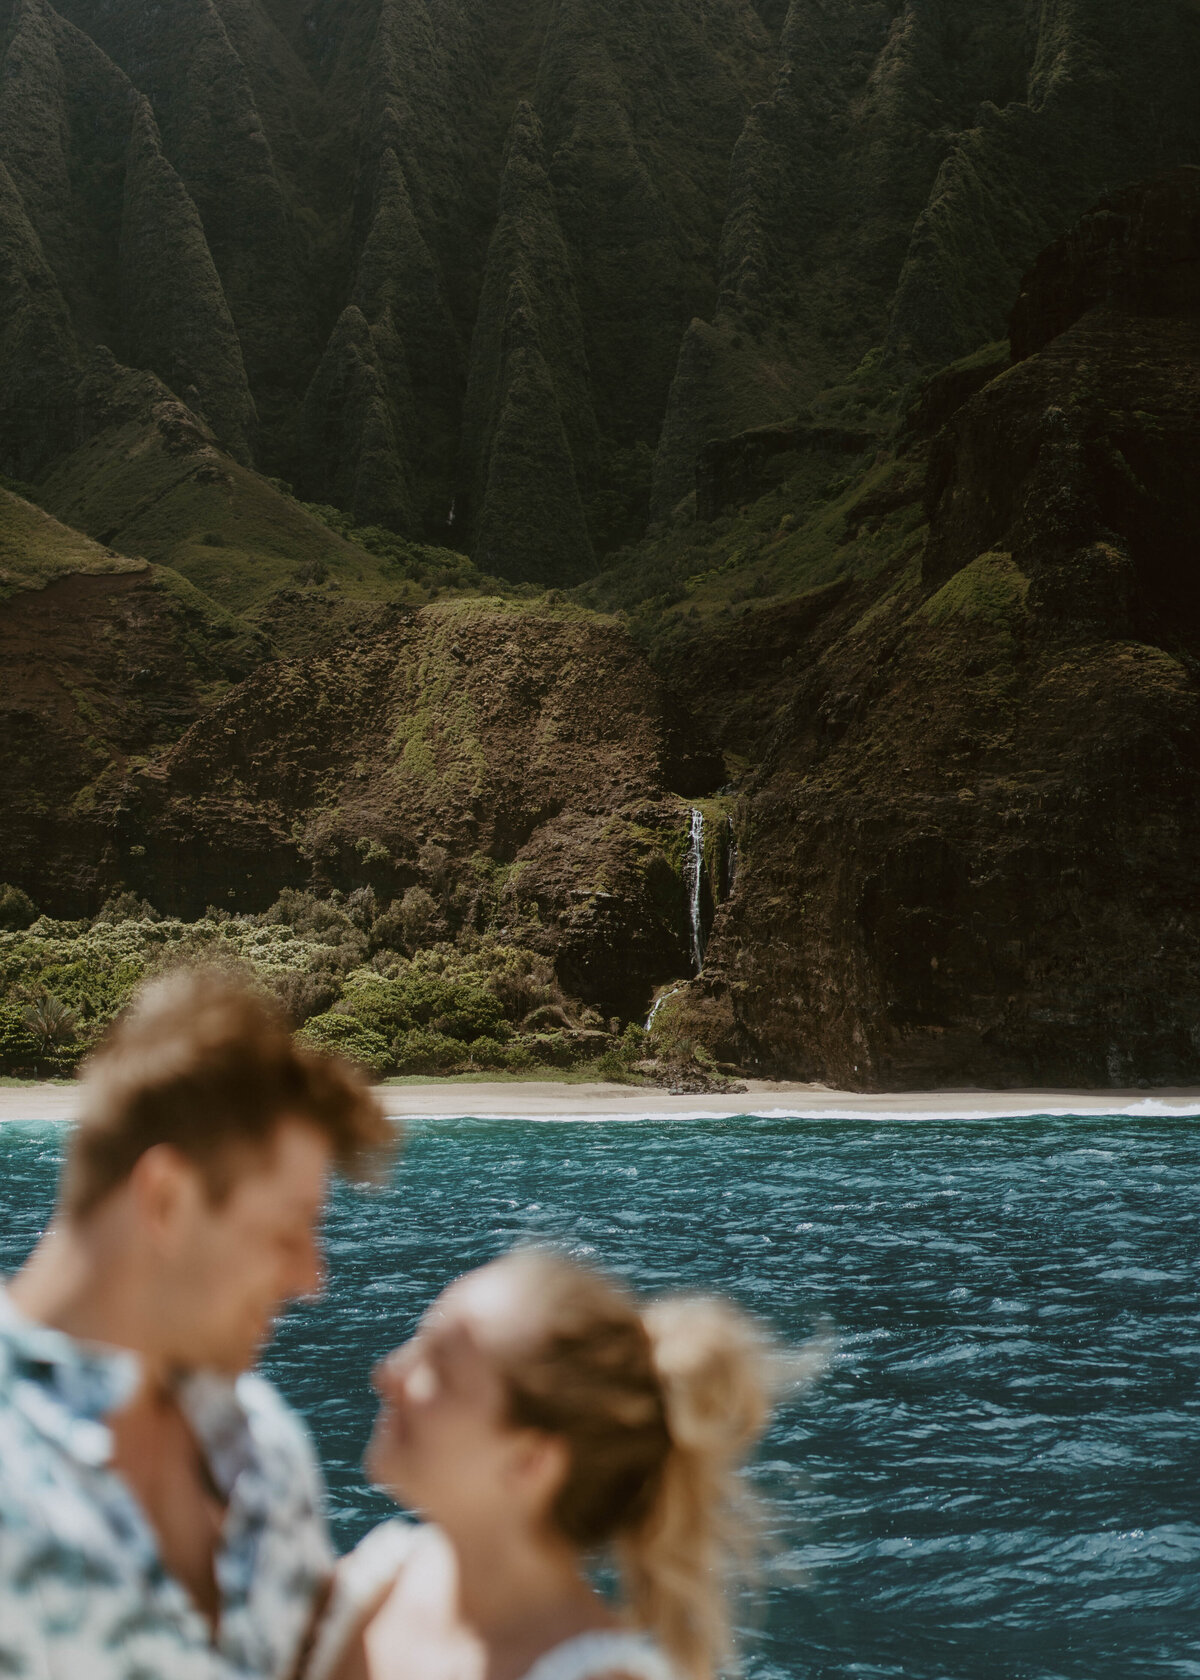 Nicole and Ethan get married on the Na Pali Coast of Kauai